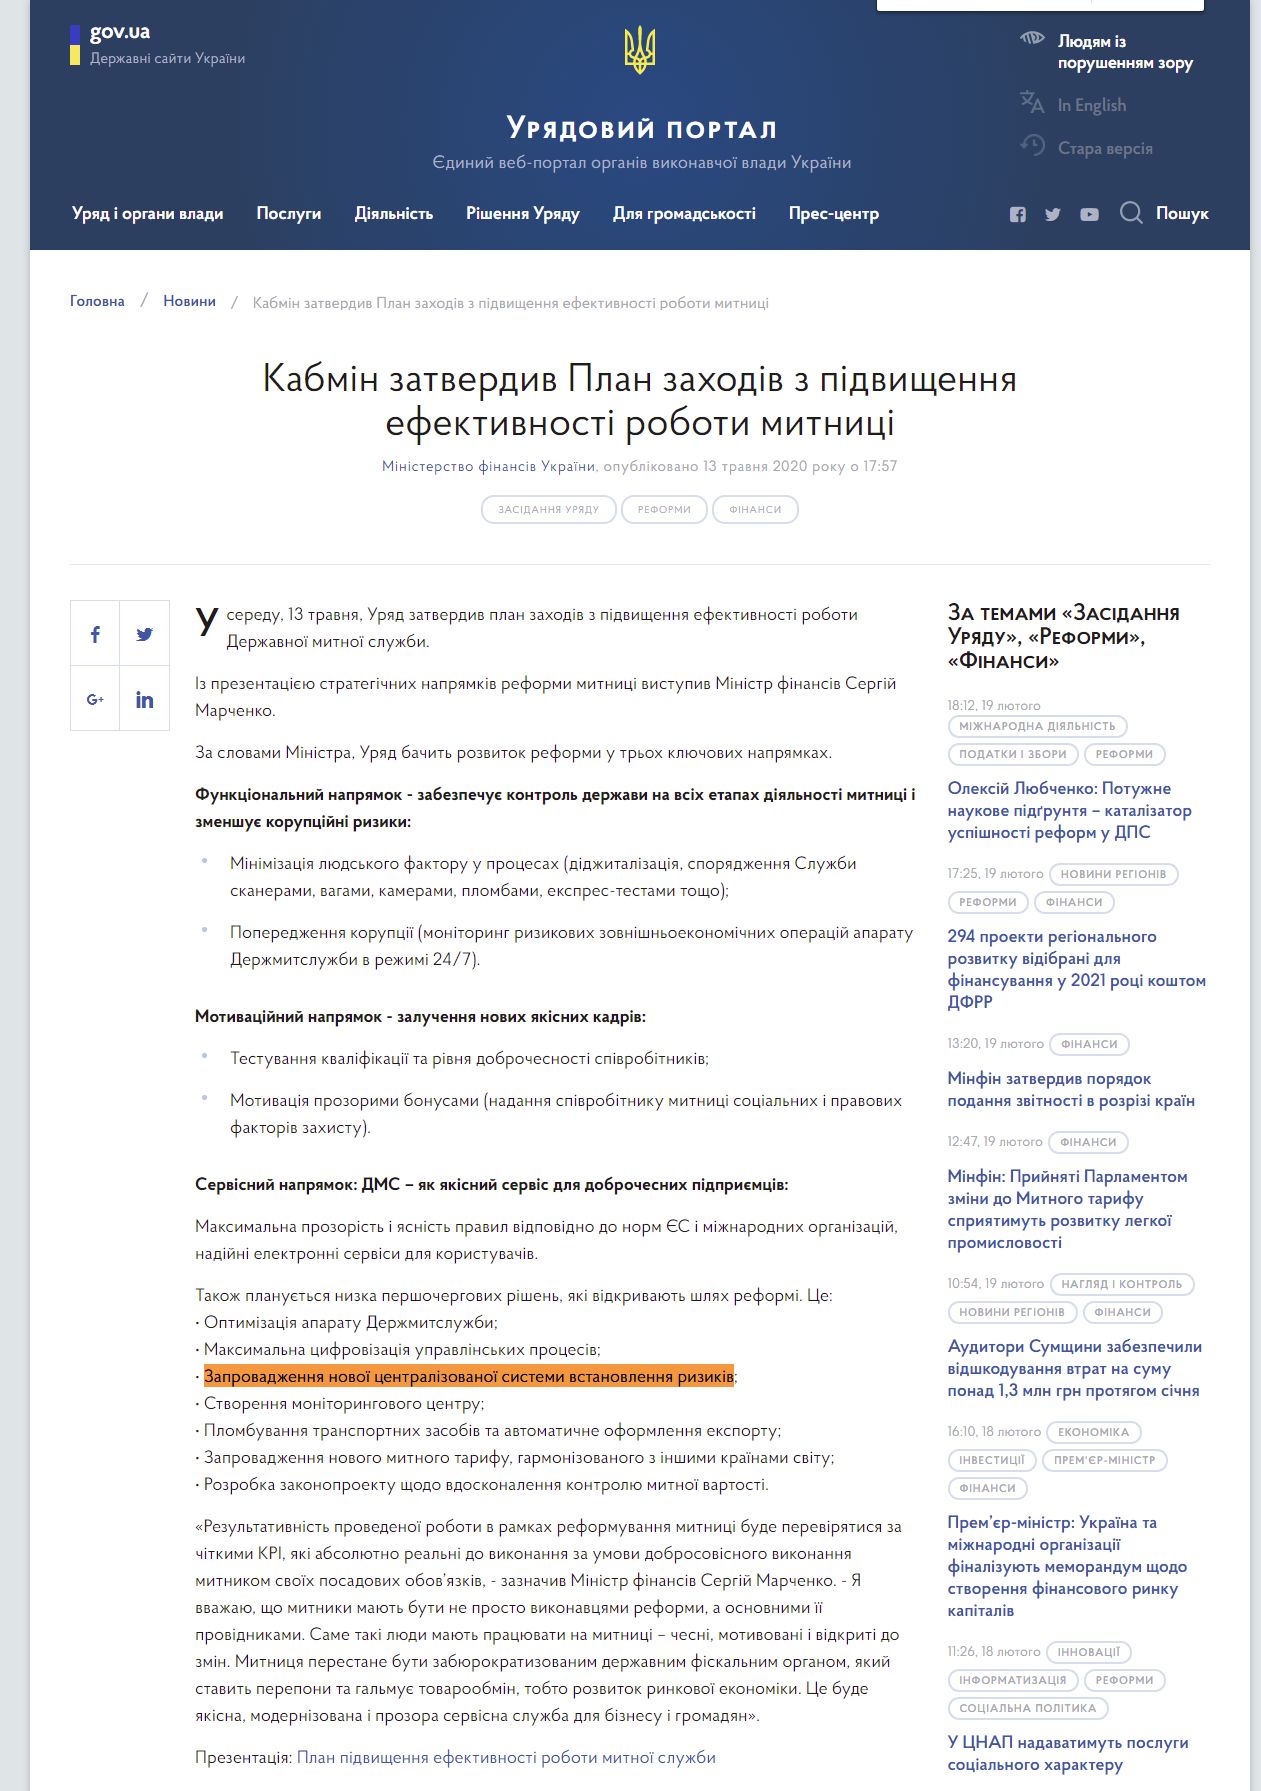 https://www.kmu.gov.ua/news/kabmin-zatverdiv-plan-zahodiv-z-pidvishchennya-efektivnosti-roboti-mitnici